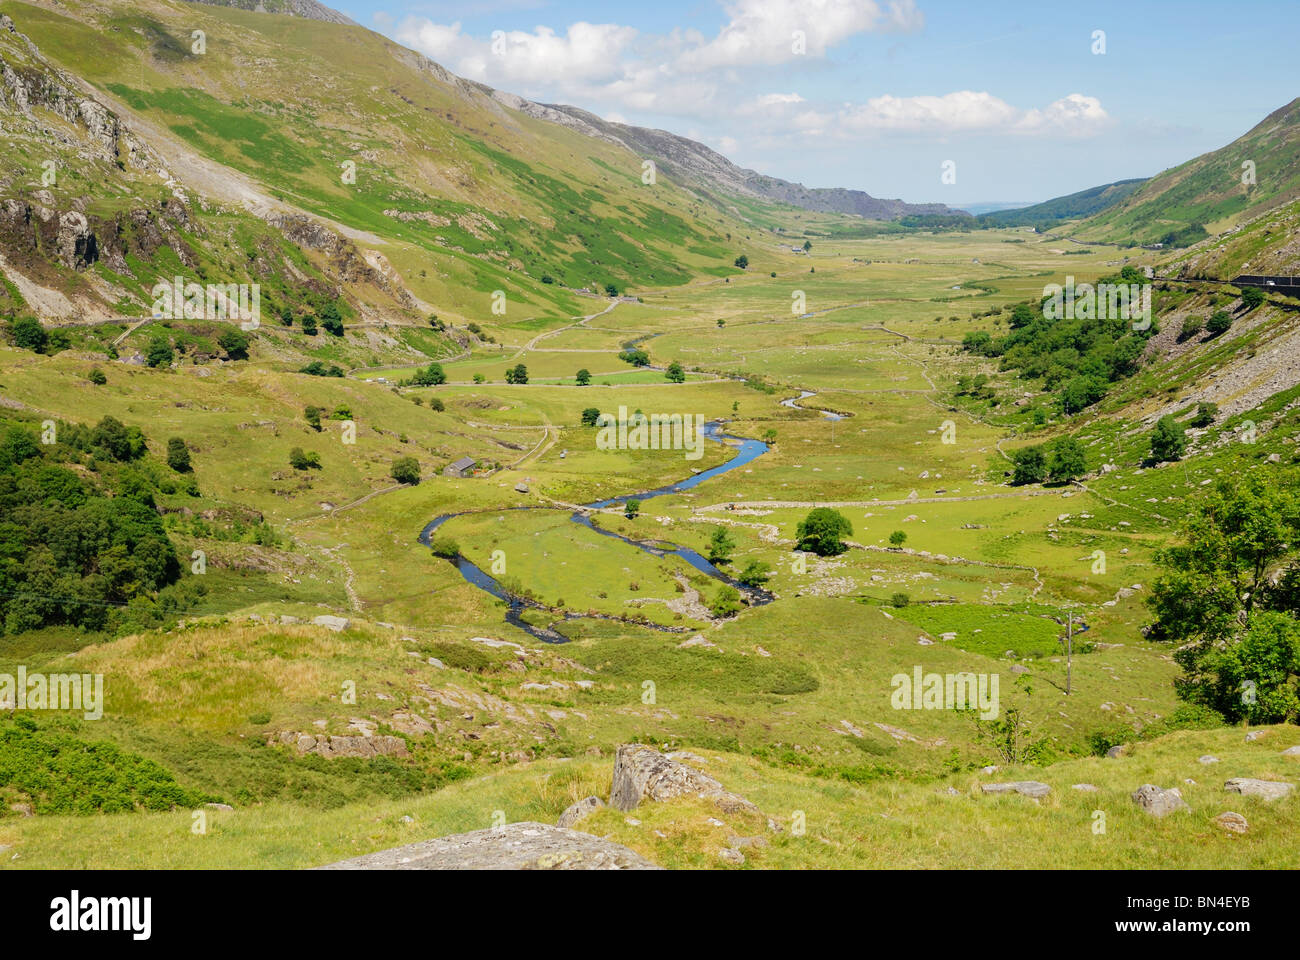 Nant Ffrancon valley de Gwynedd, un classique de la vallée glaciaire en forme de U. Afon Ogwen est la rivière qui serpente à travers la vallée. Banque D'Images